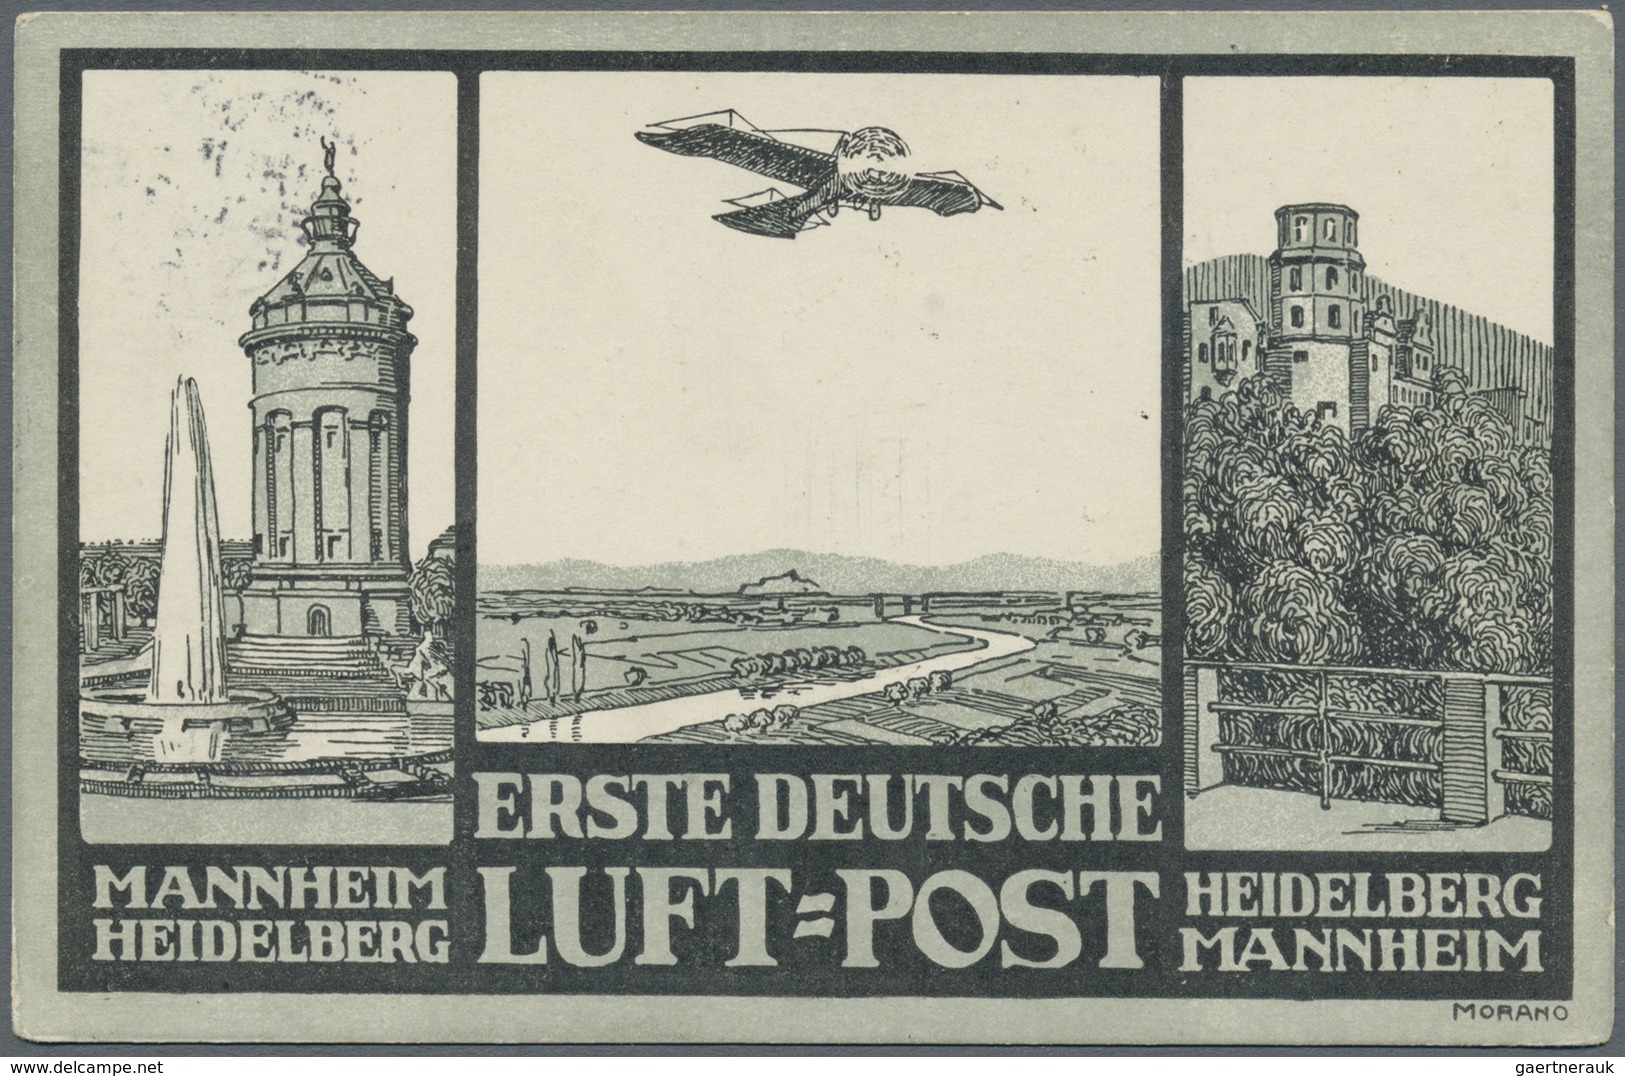 Ansichtskarten: Baden-Württemberg: HEIDELBERG und Umgebung (alte PLZ 690), eine anspruchsvolle Parti